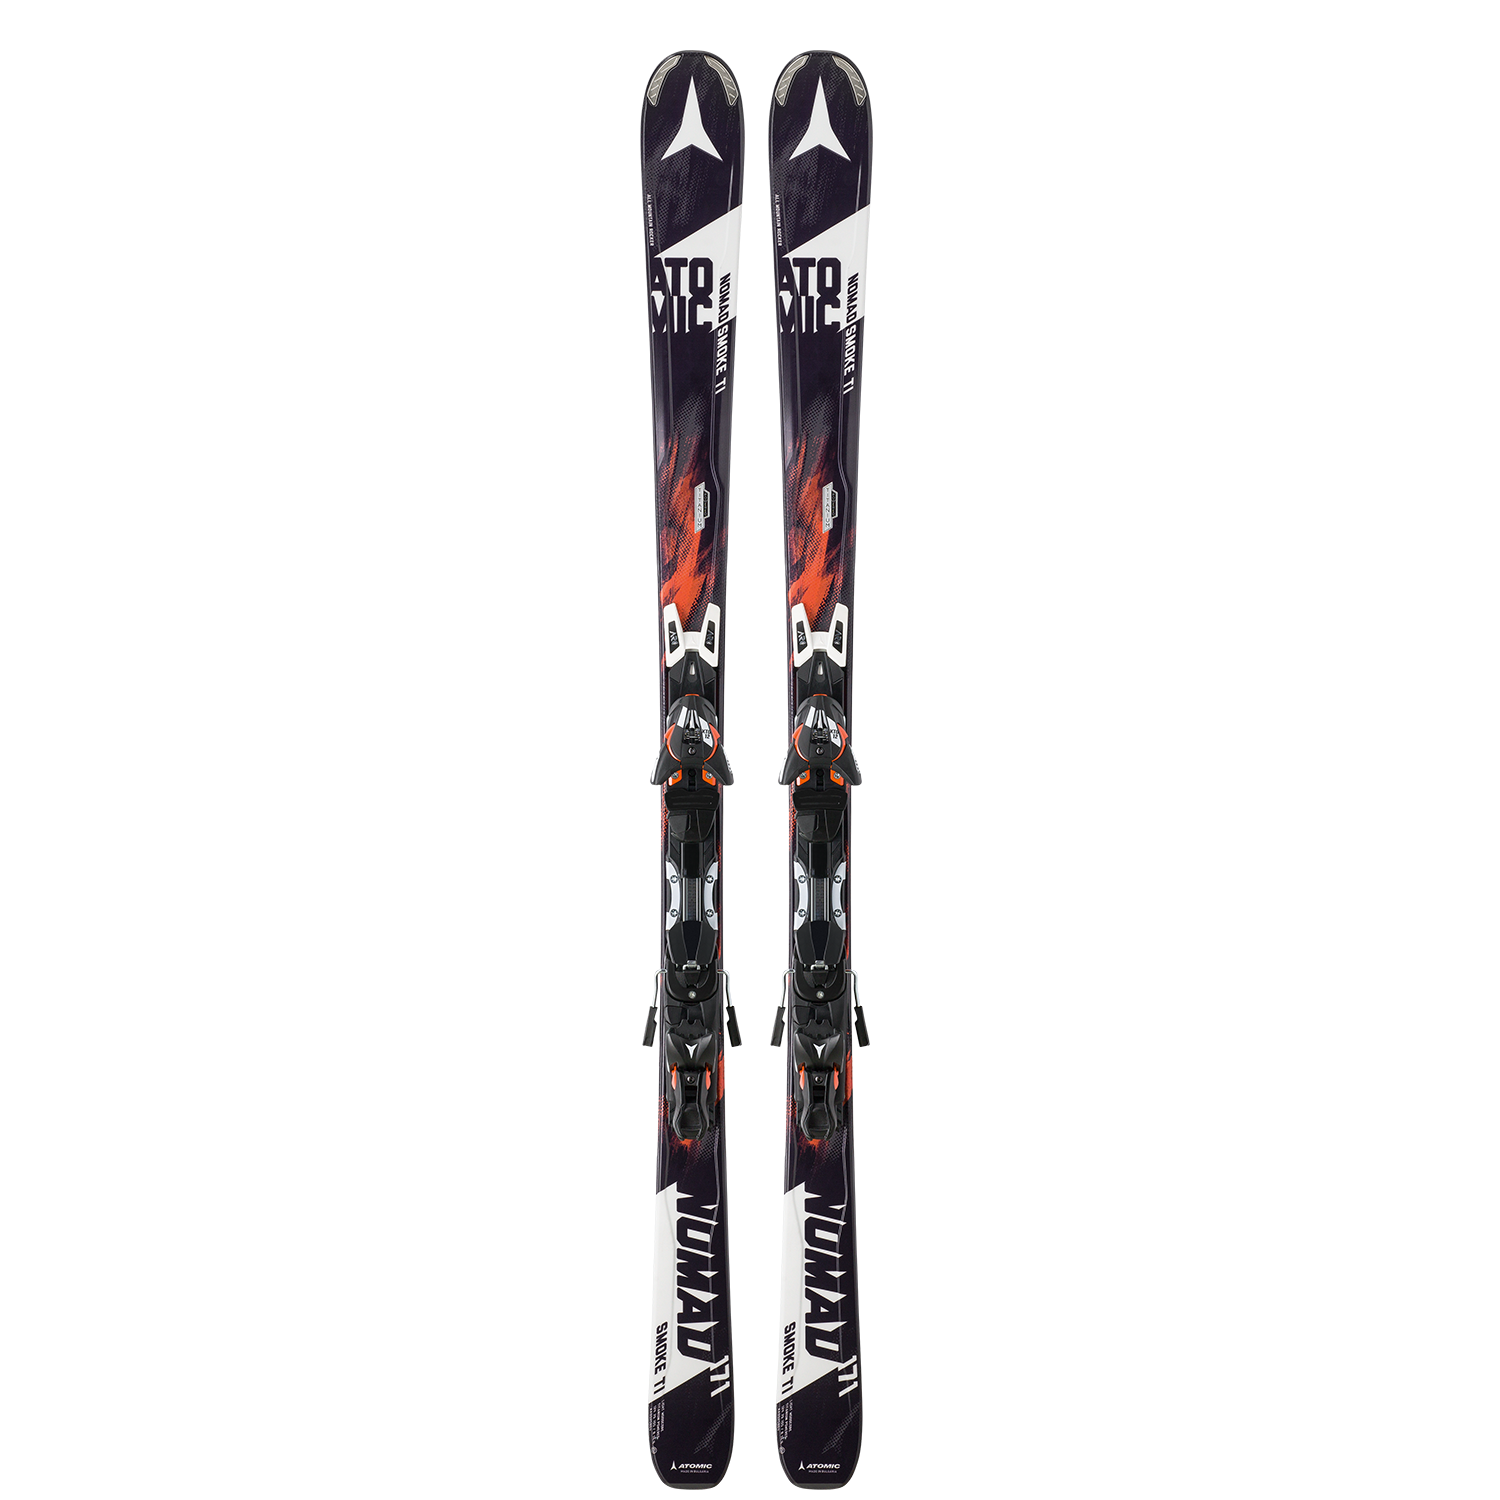 Ski | Atomic Smoke TI ARC + XTO 12 | Ski equipment